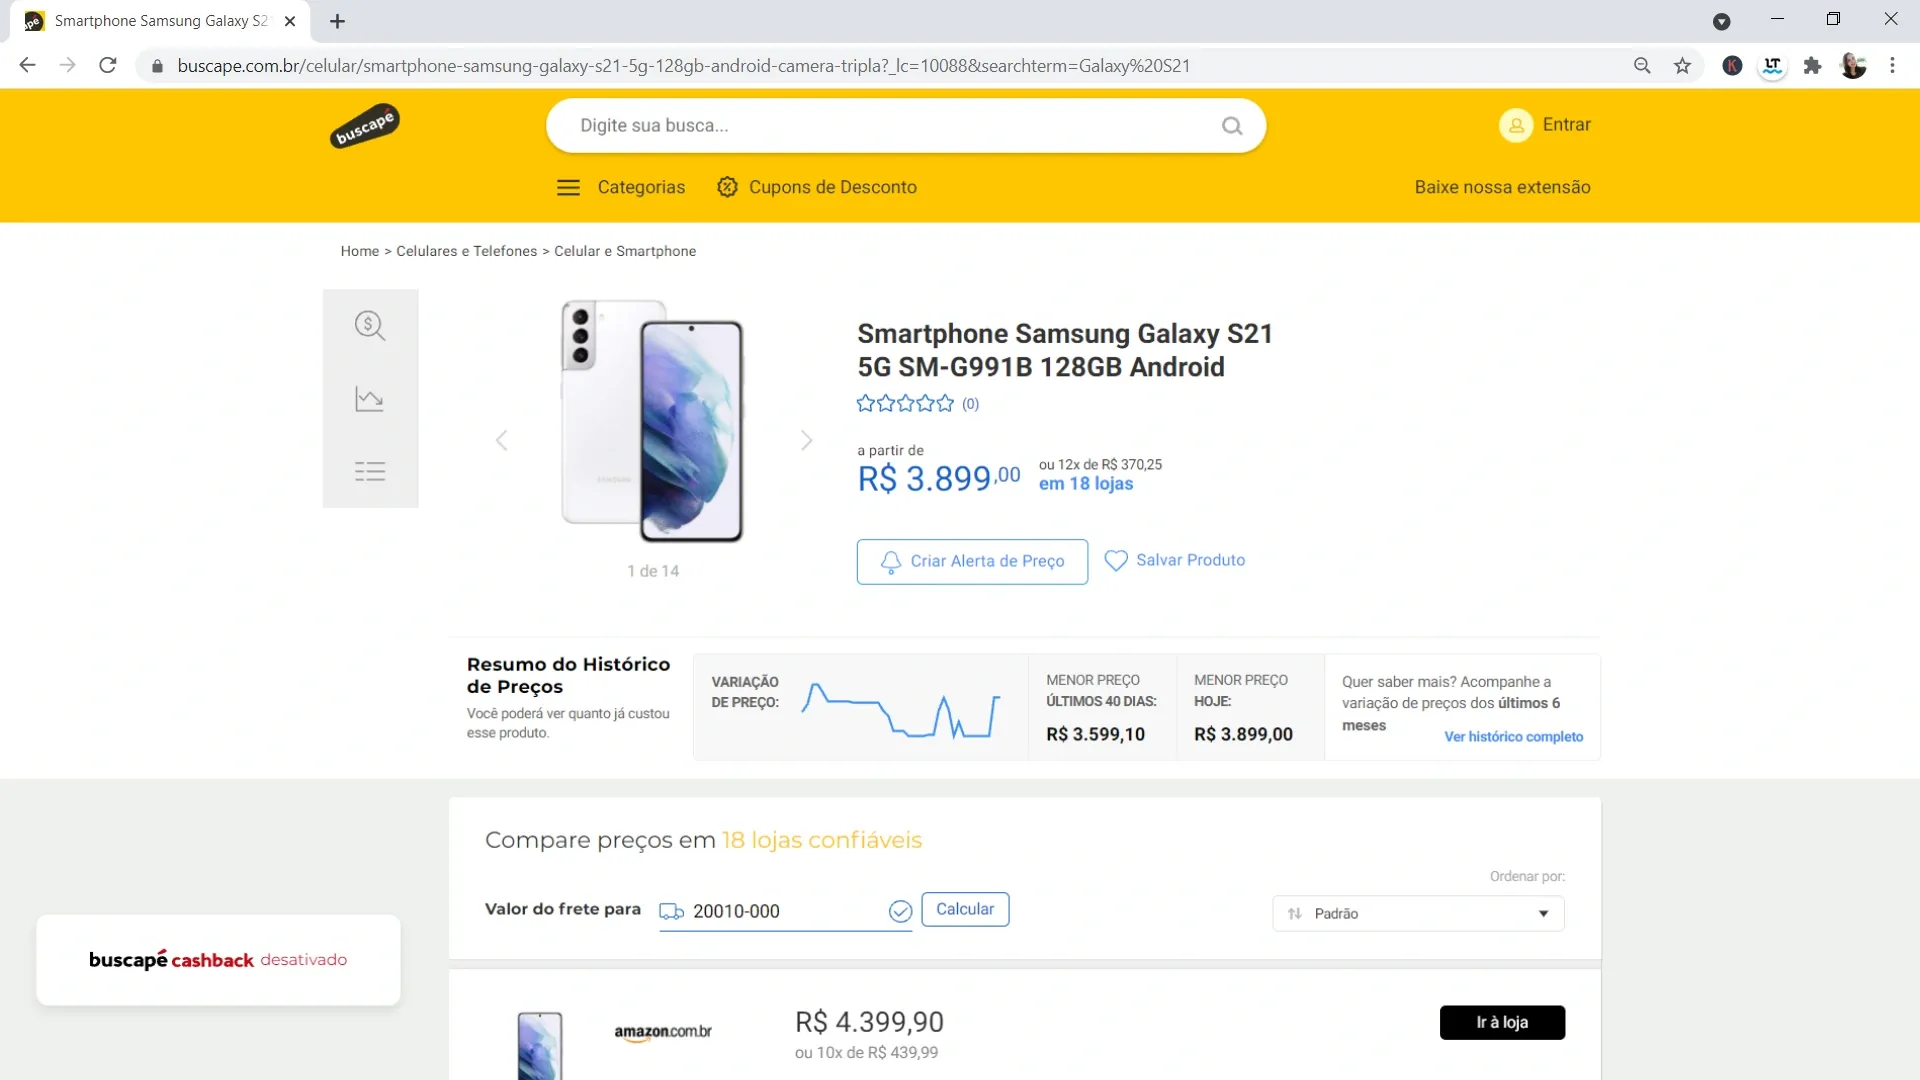 Página do celular Galaxy S21 no site Buscapé